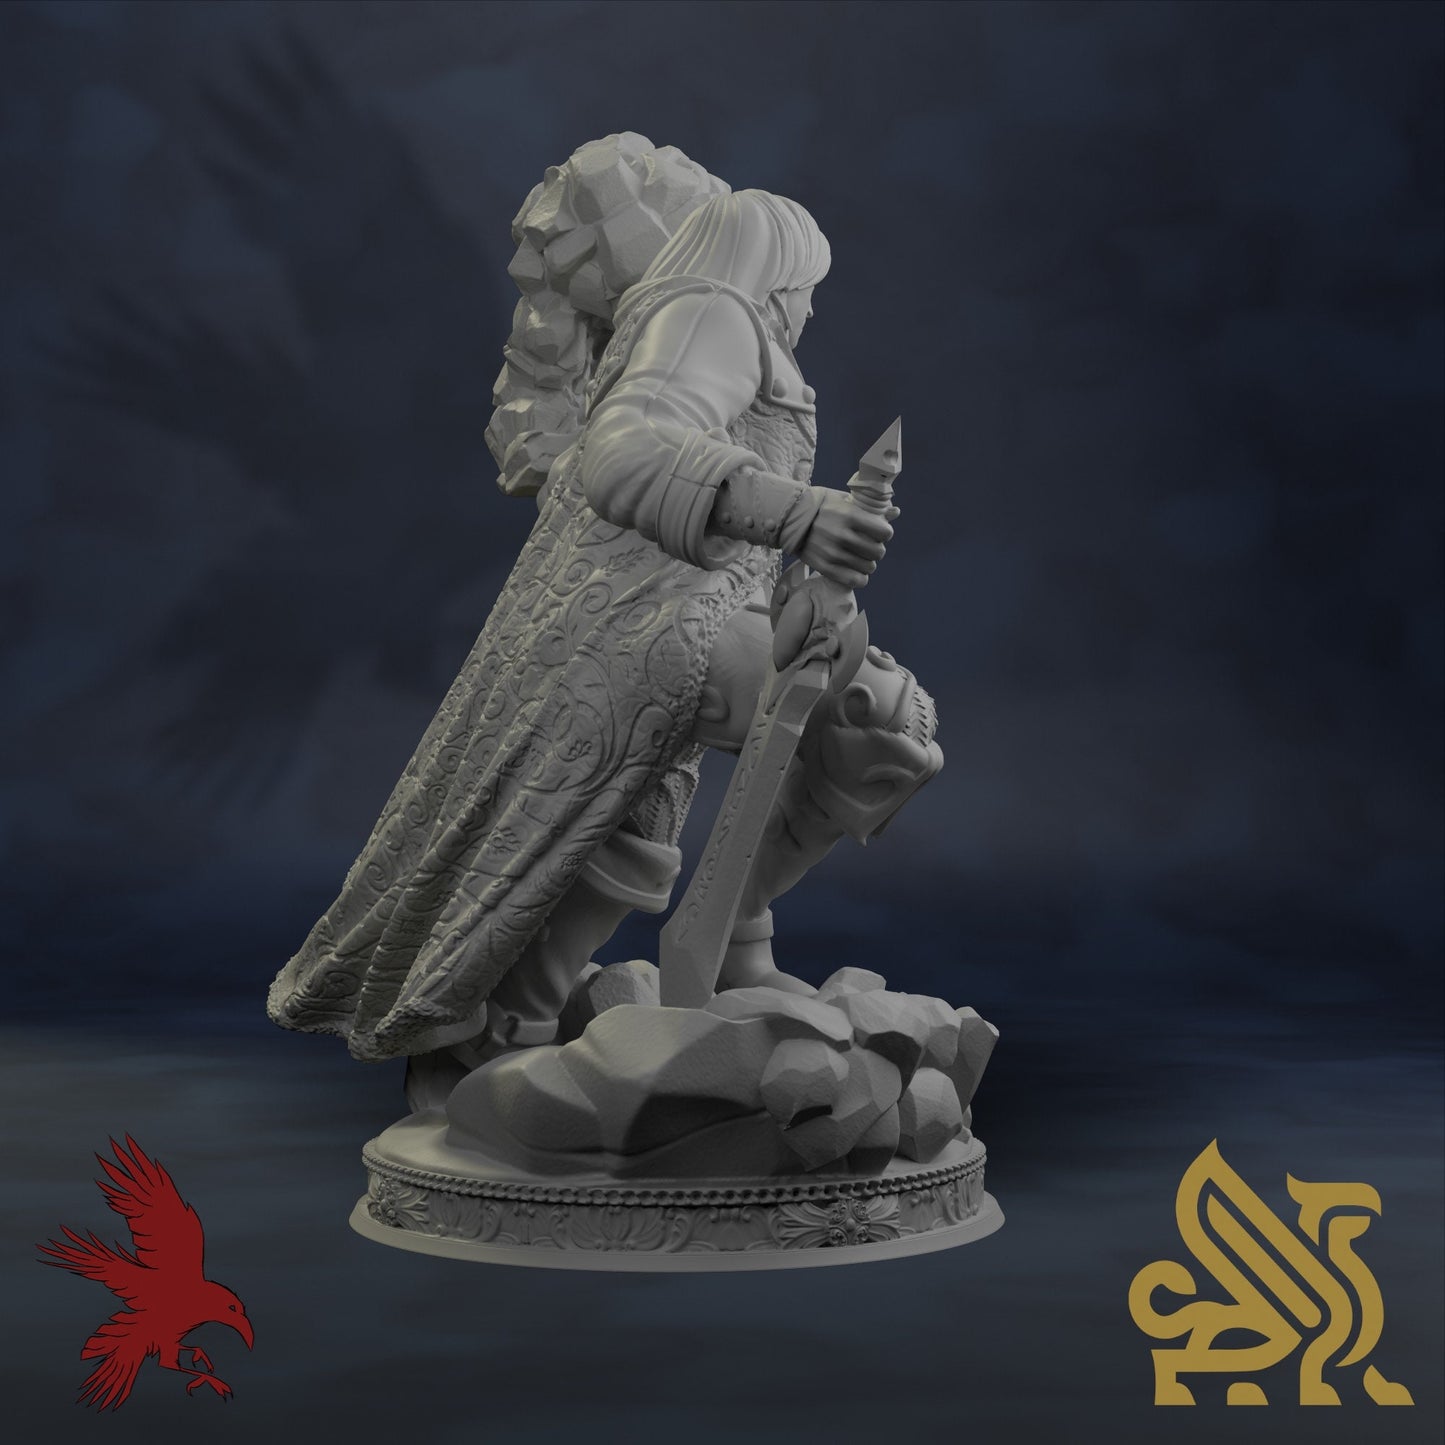 Invoker Dorian • Golden Griffins • Dungeon Masters Stash • 3D Printed Fantasy Miniature • D&D / Pathfinder / Warhammer